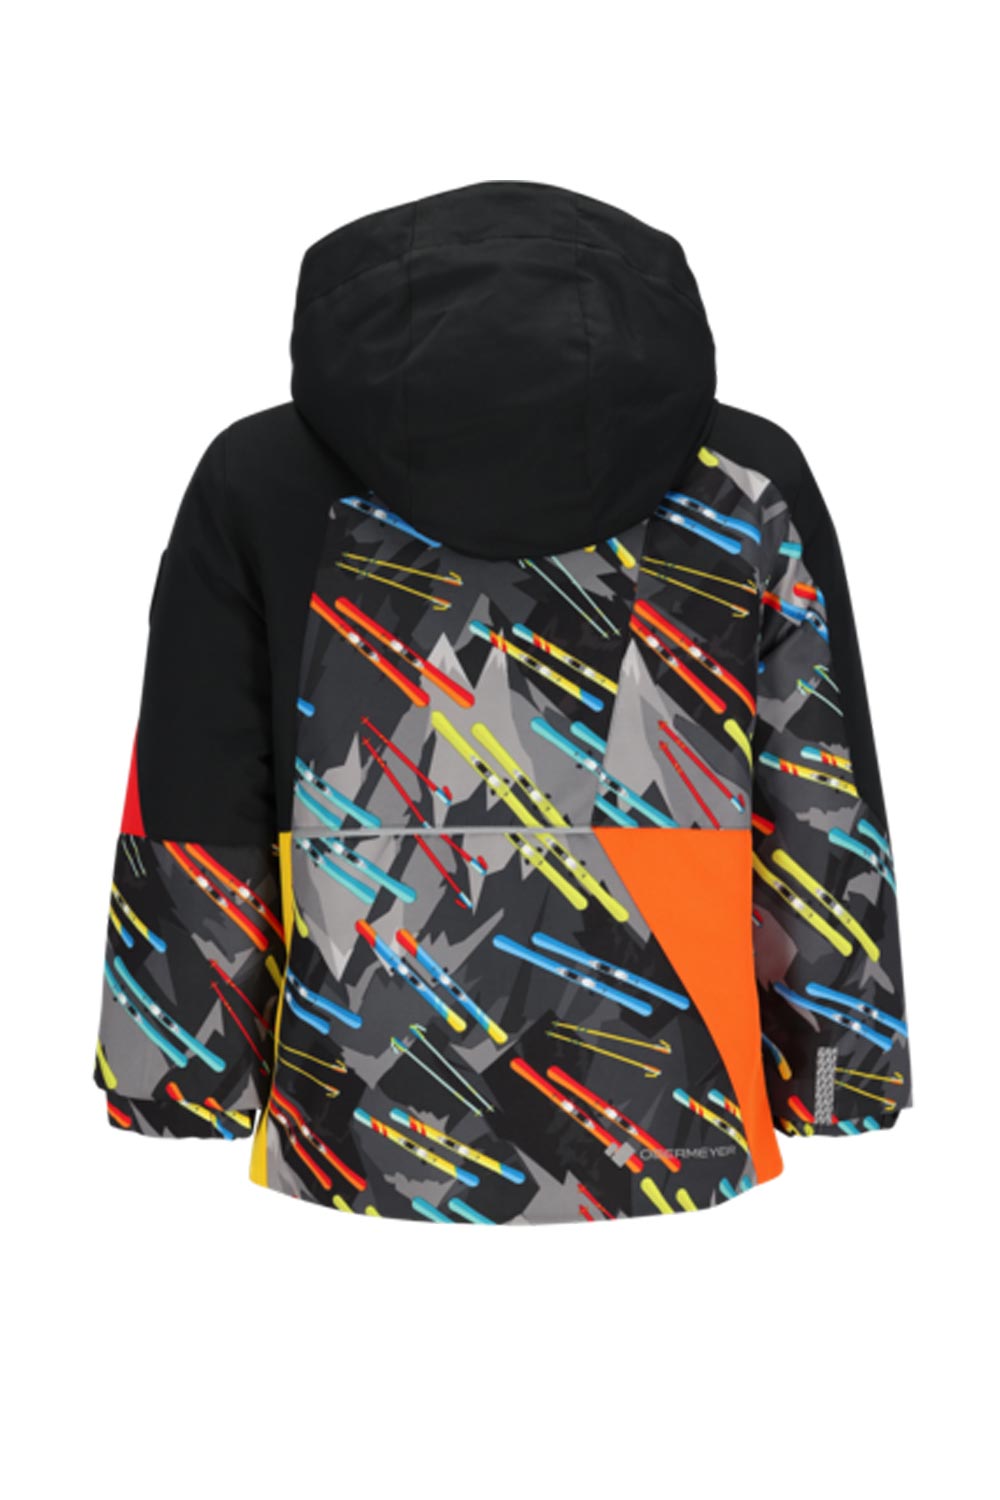 Boys' Obermeyer ski jacket,  skis graphic